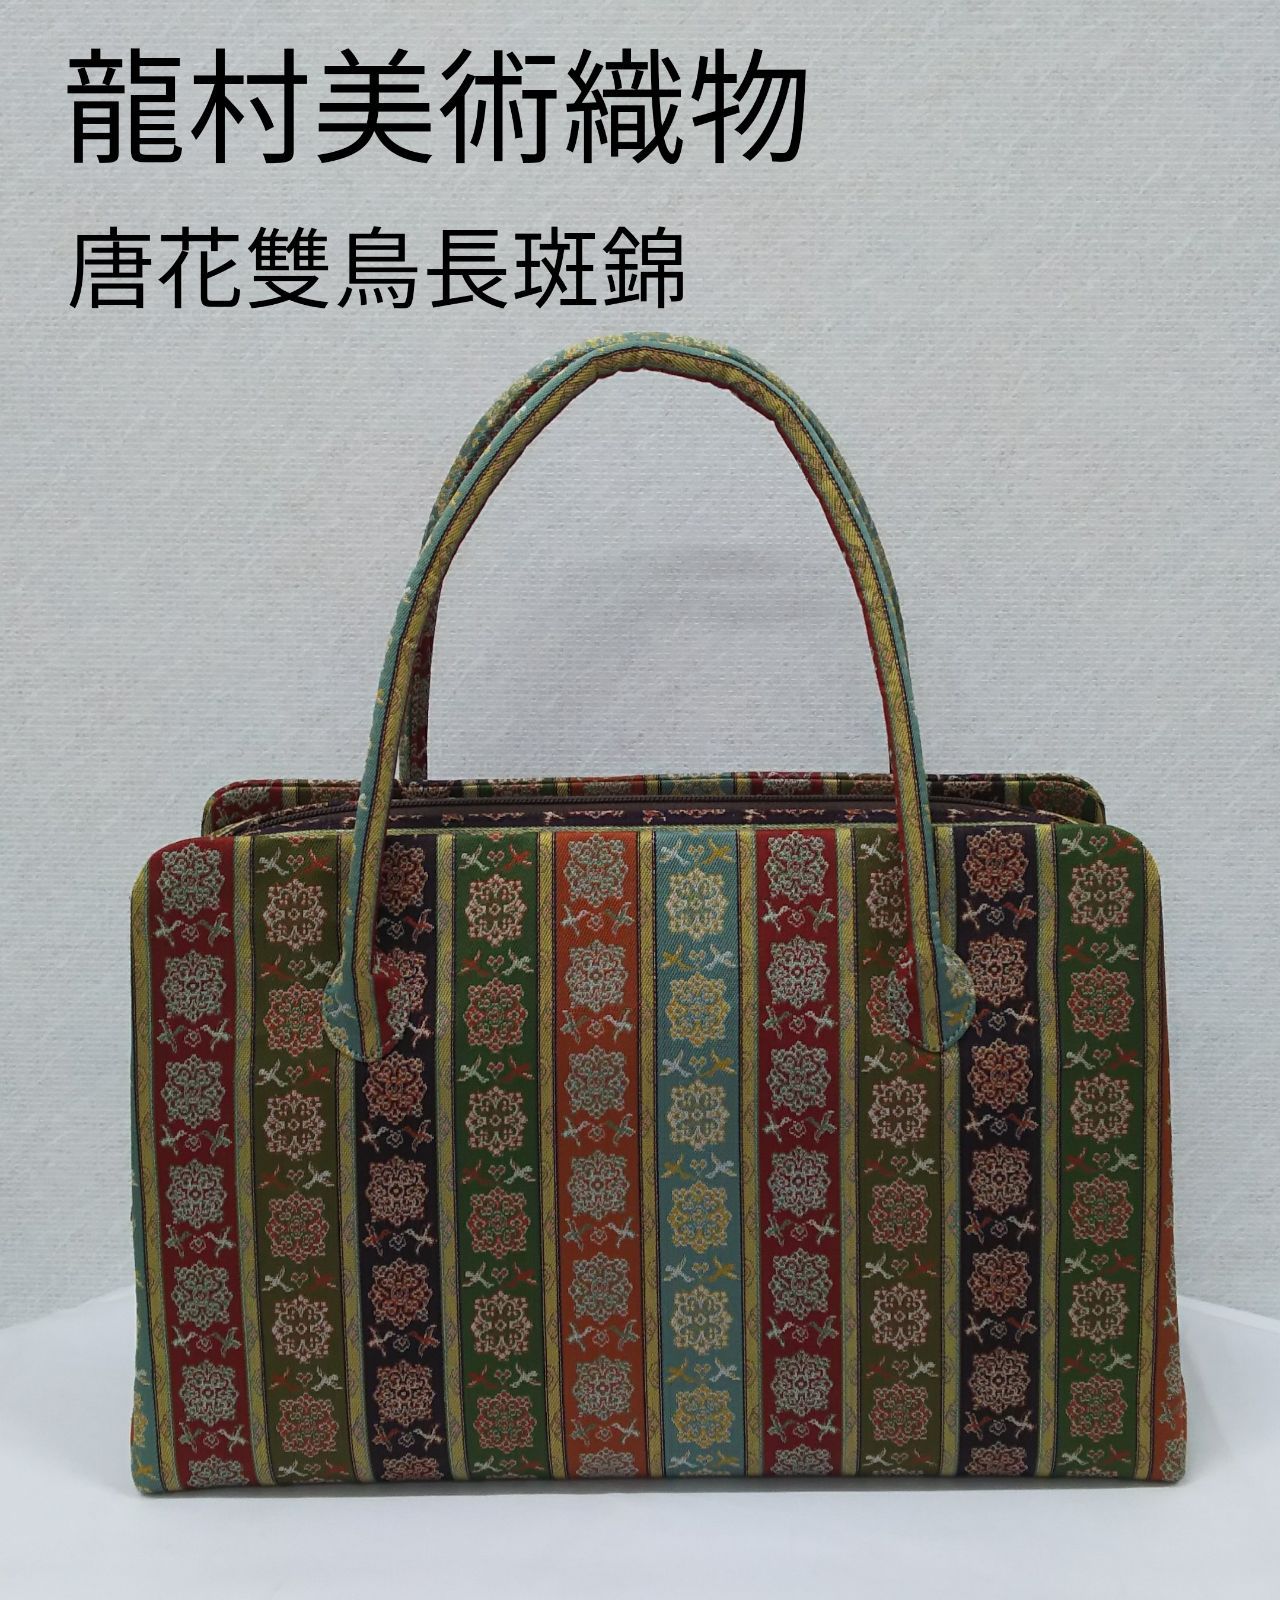 アウトレット価格比較 龍村美術織物 バッグ - レディース